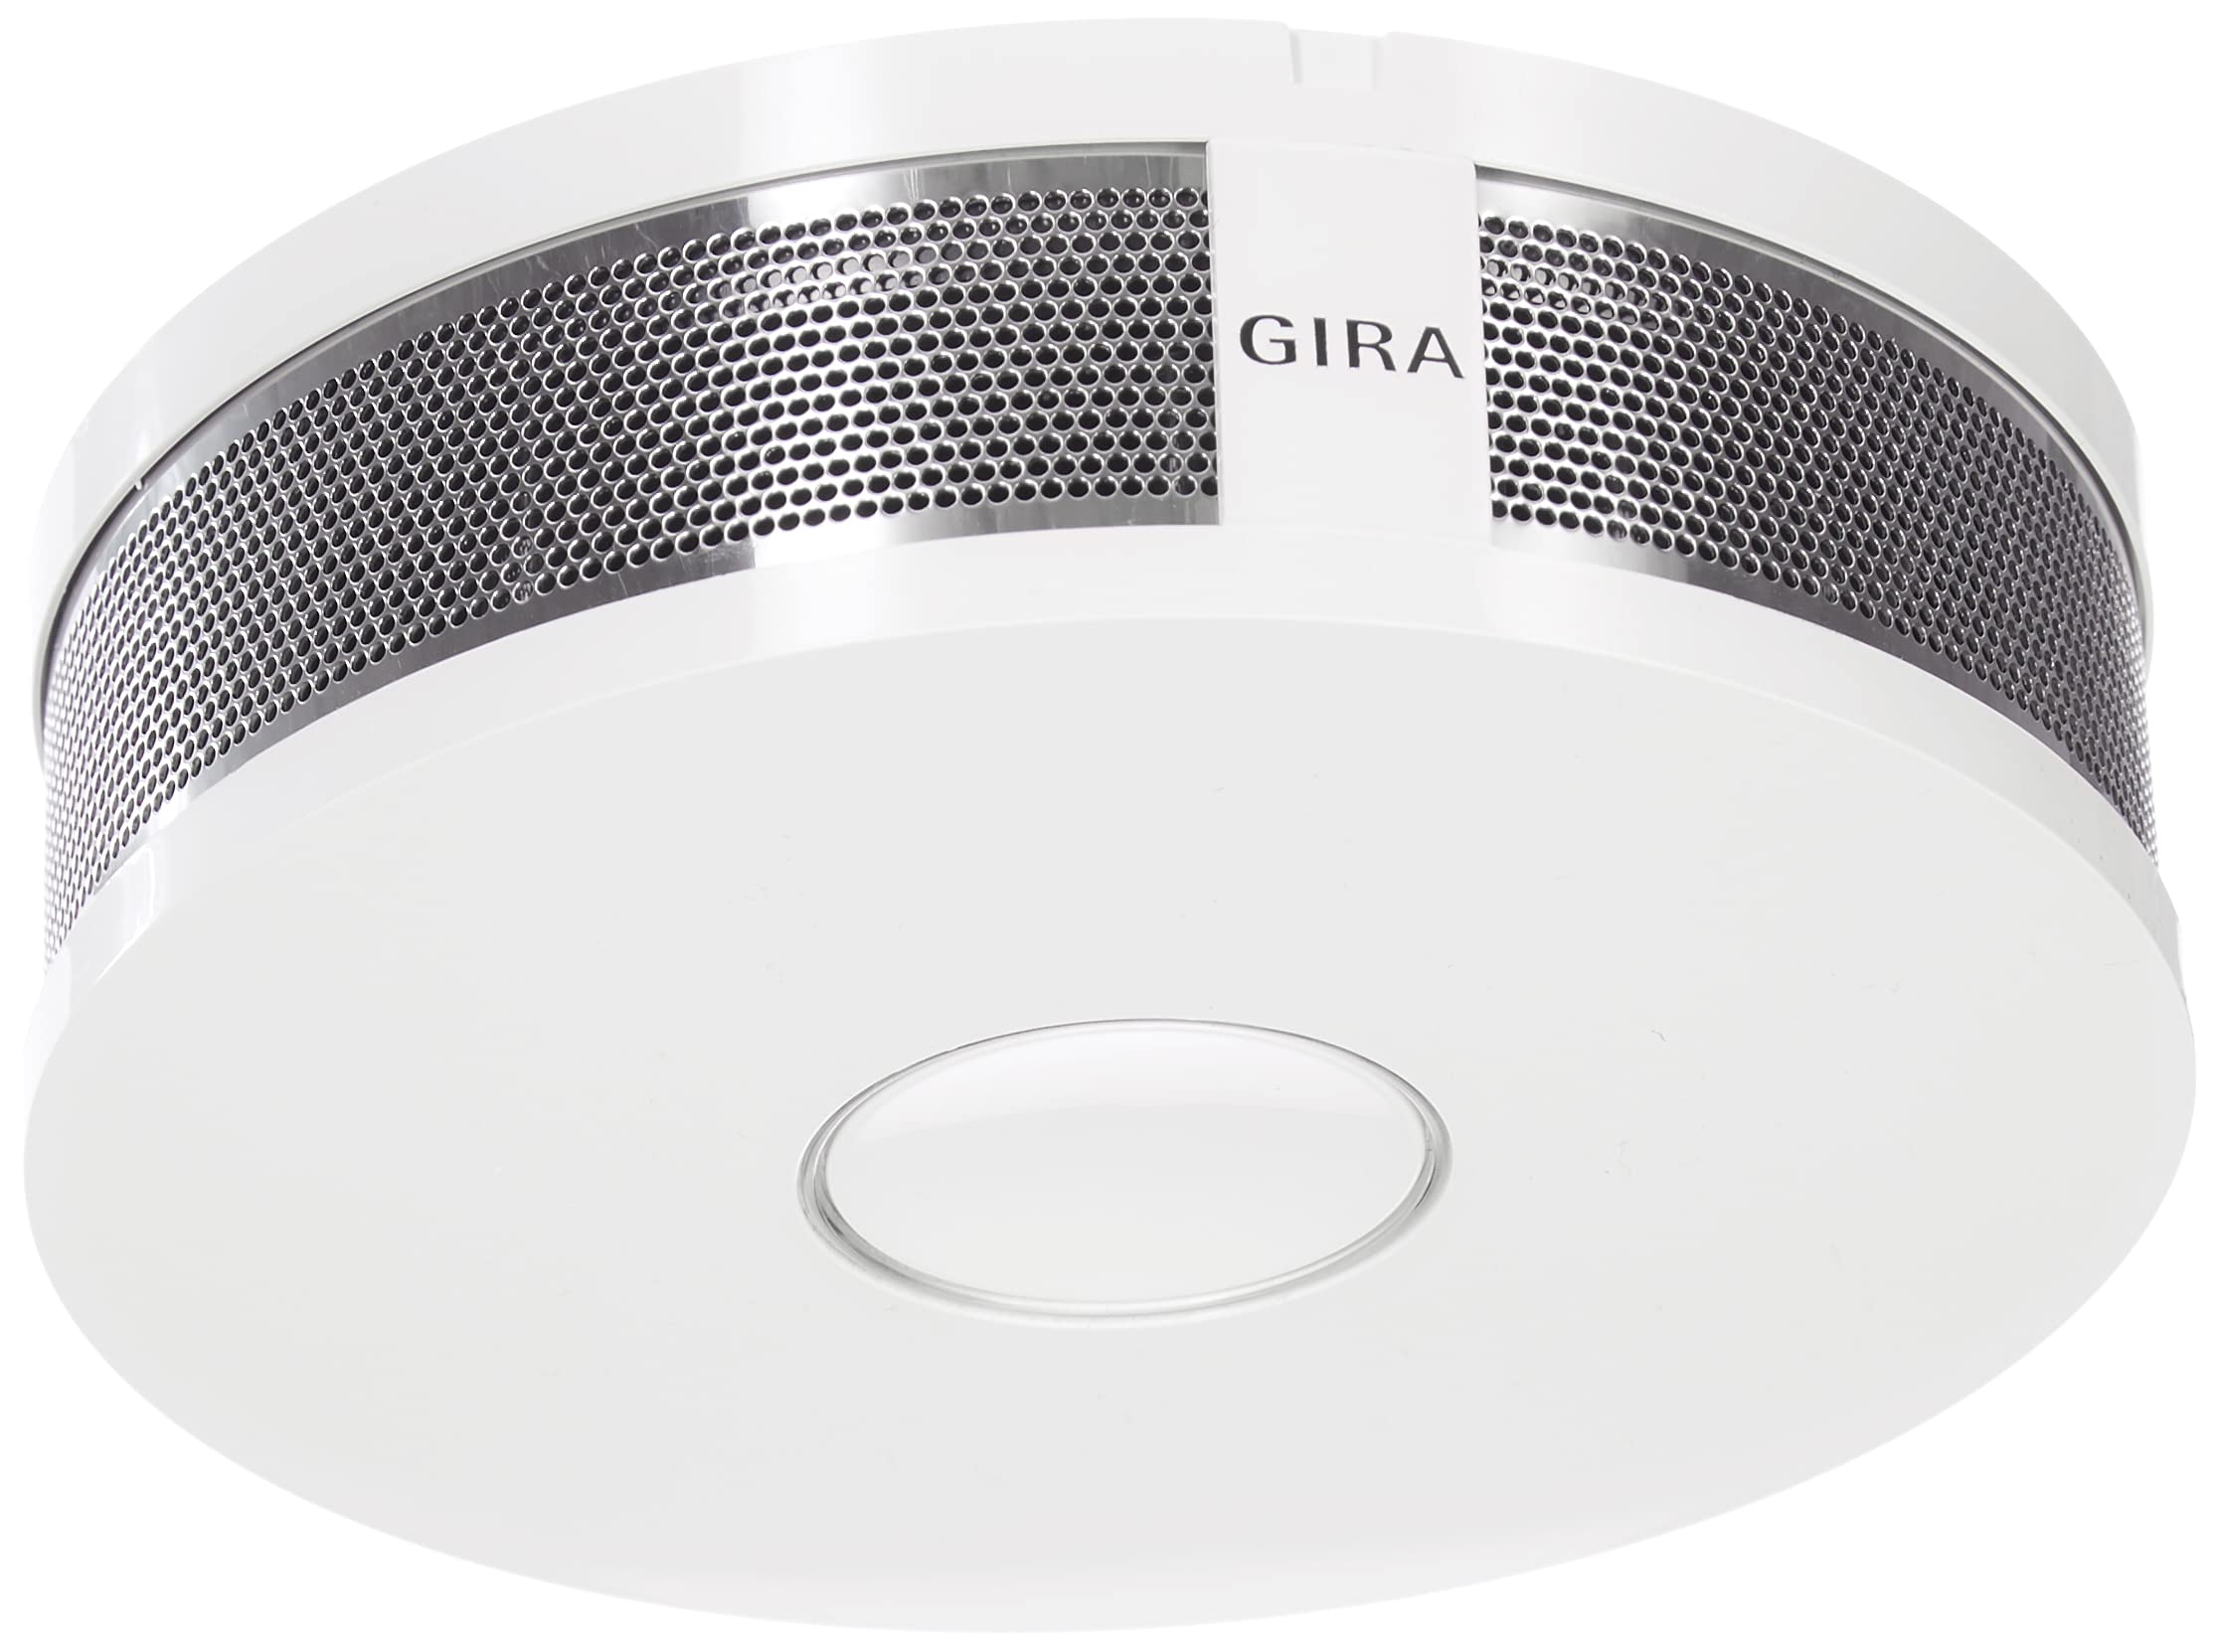 Gira Rauchwarnmelder Dual Q DIN14604, vernetzbar über Funk und Draht, reinweiß, 233602